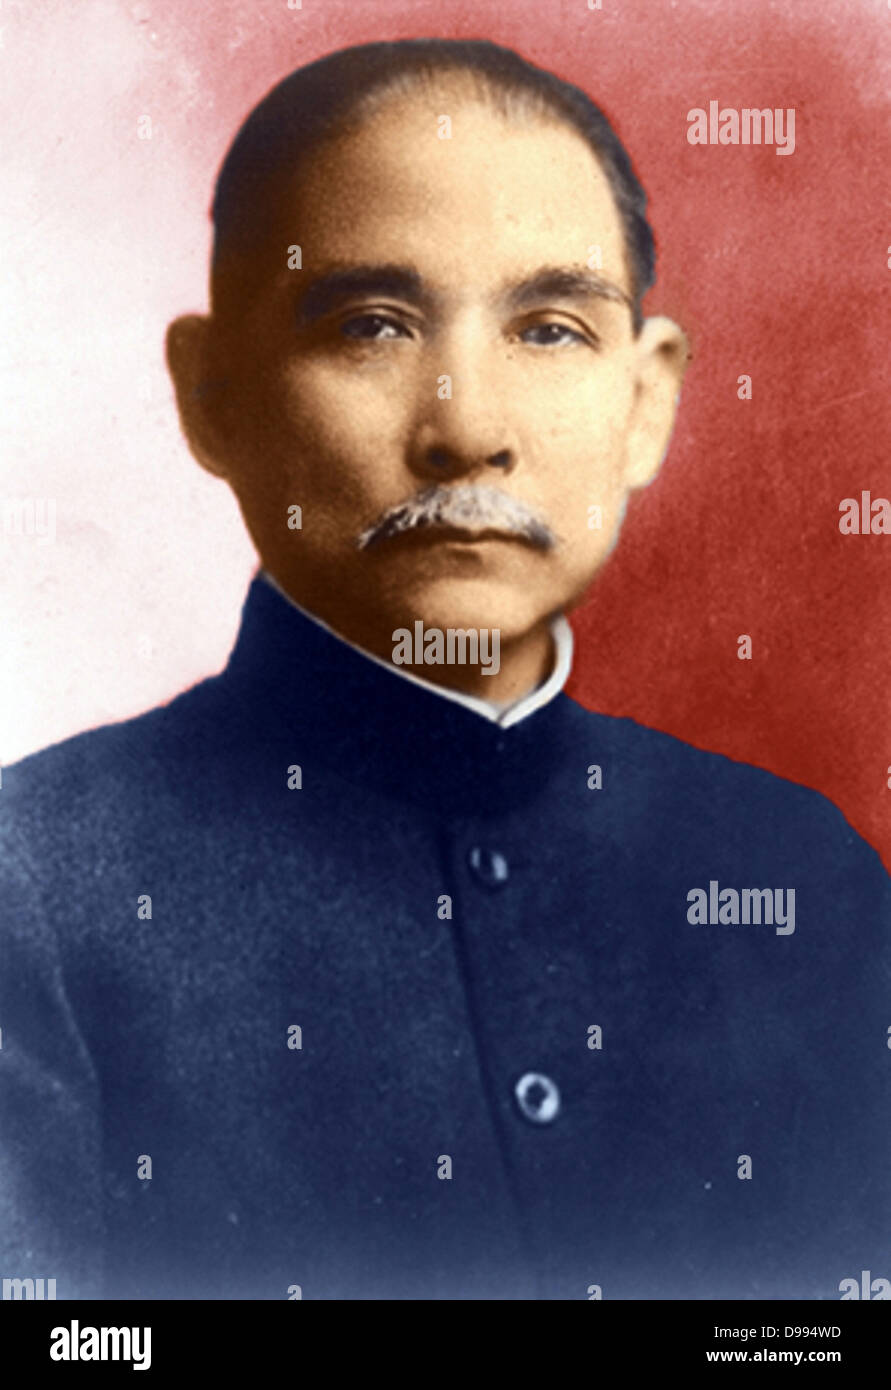 Sun Yat-Sen (1866-1925) révolutionnaire chinois et dirigeant politique qui a joué un rôle déterminant dans le renversement de la dynastie Qing en octobre 1911, la dernière dynastie impériale de Chine. Nationalisme Banque D'Images